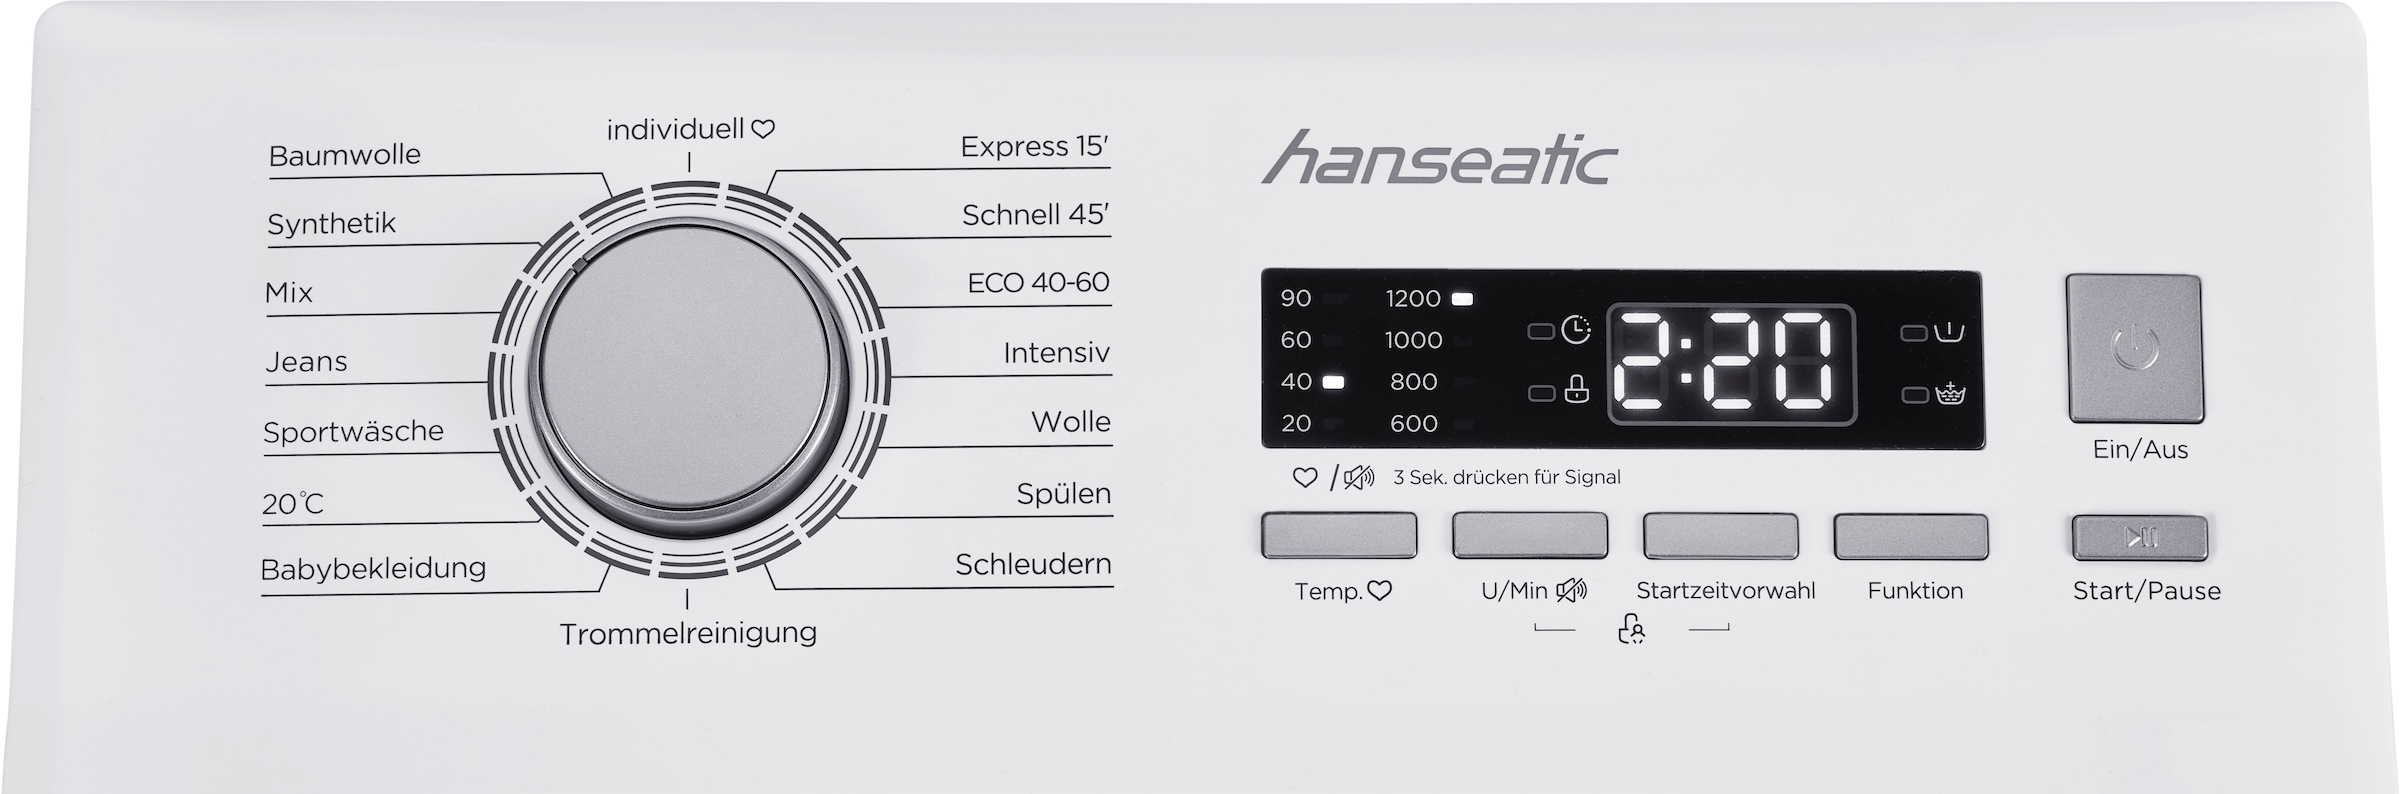 Hanseatic Waschmaschine Toplader, HTW7512C, 7,5 kg, 1200 U/min, Mengenautomatik, Überlaufschutzsystem, Express Programm